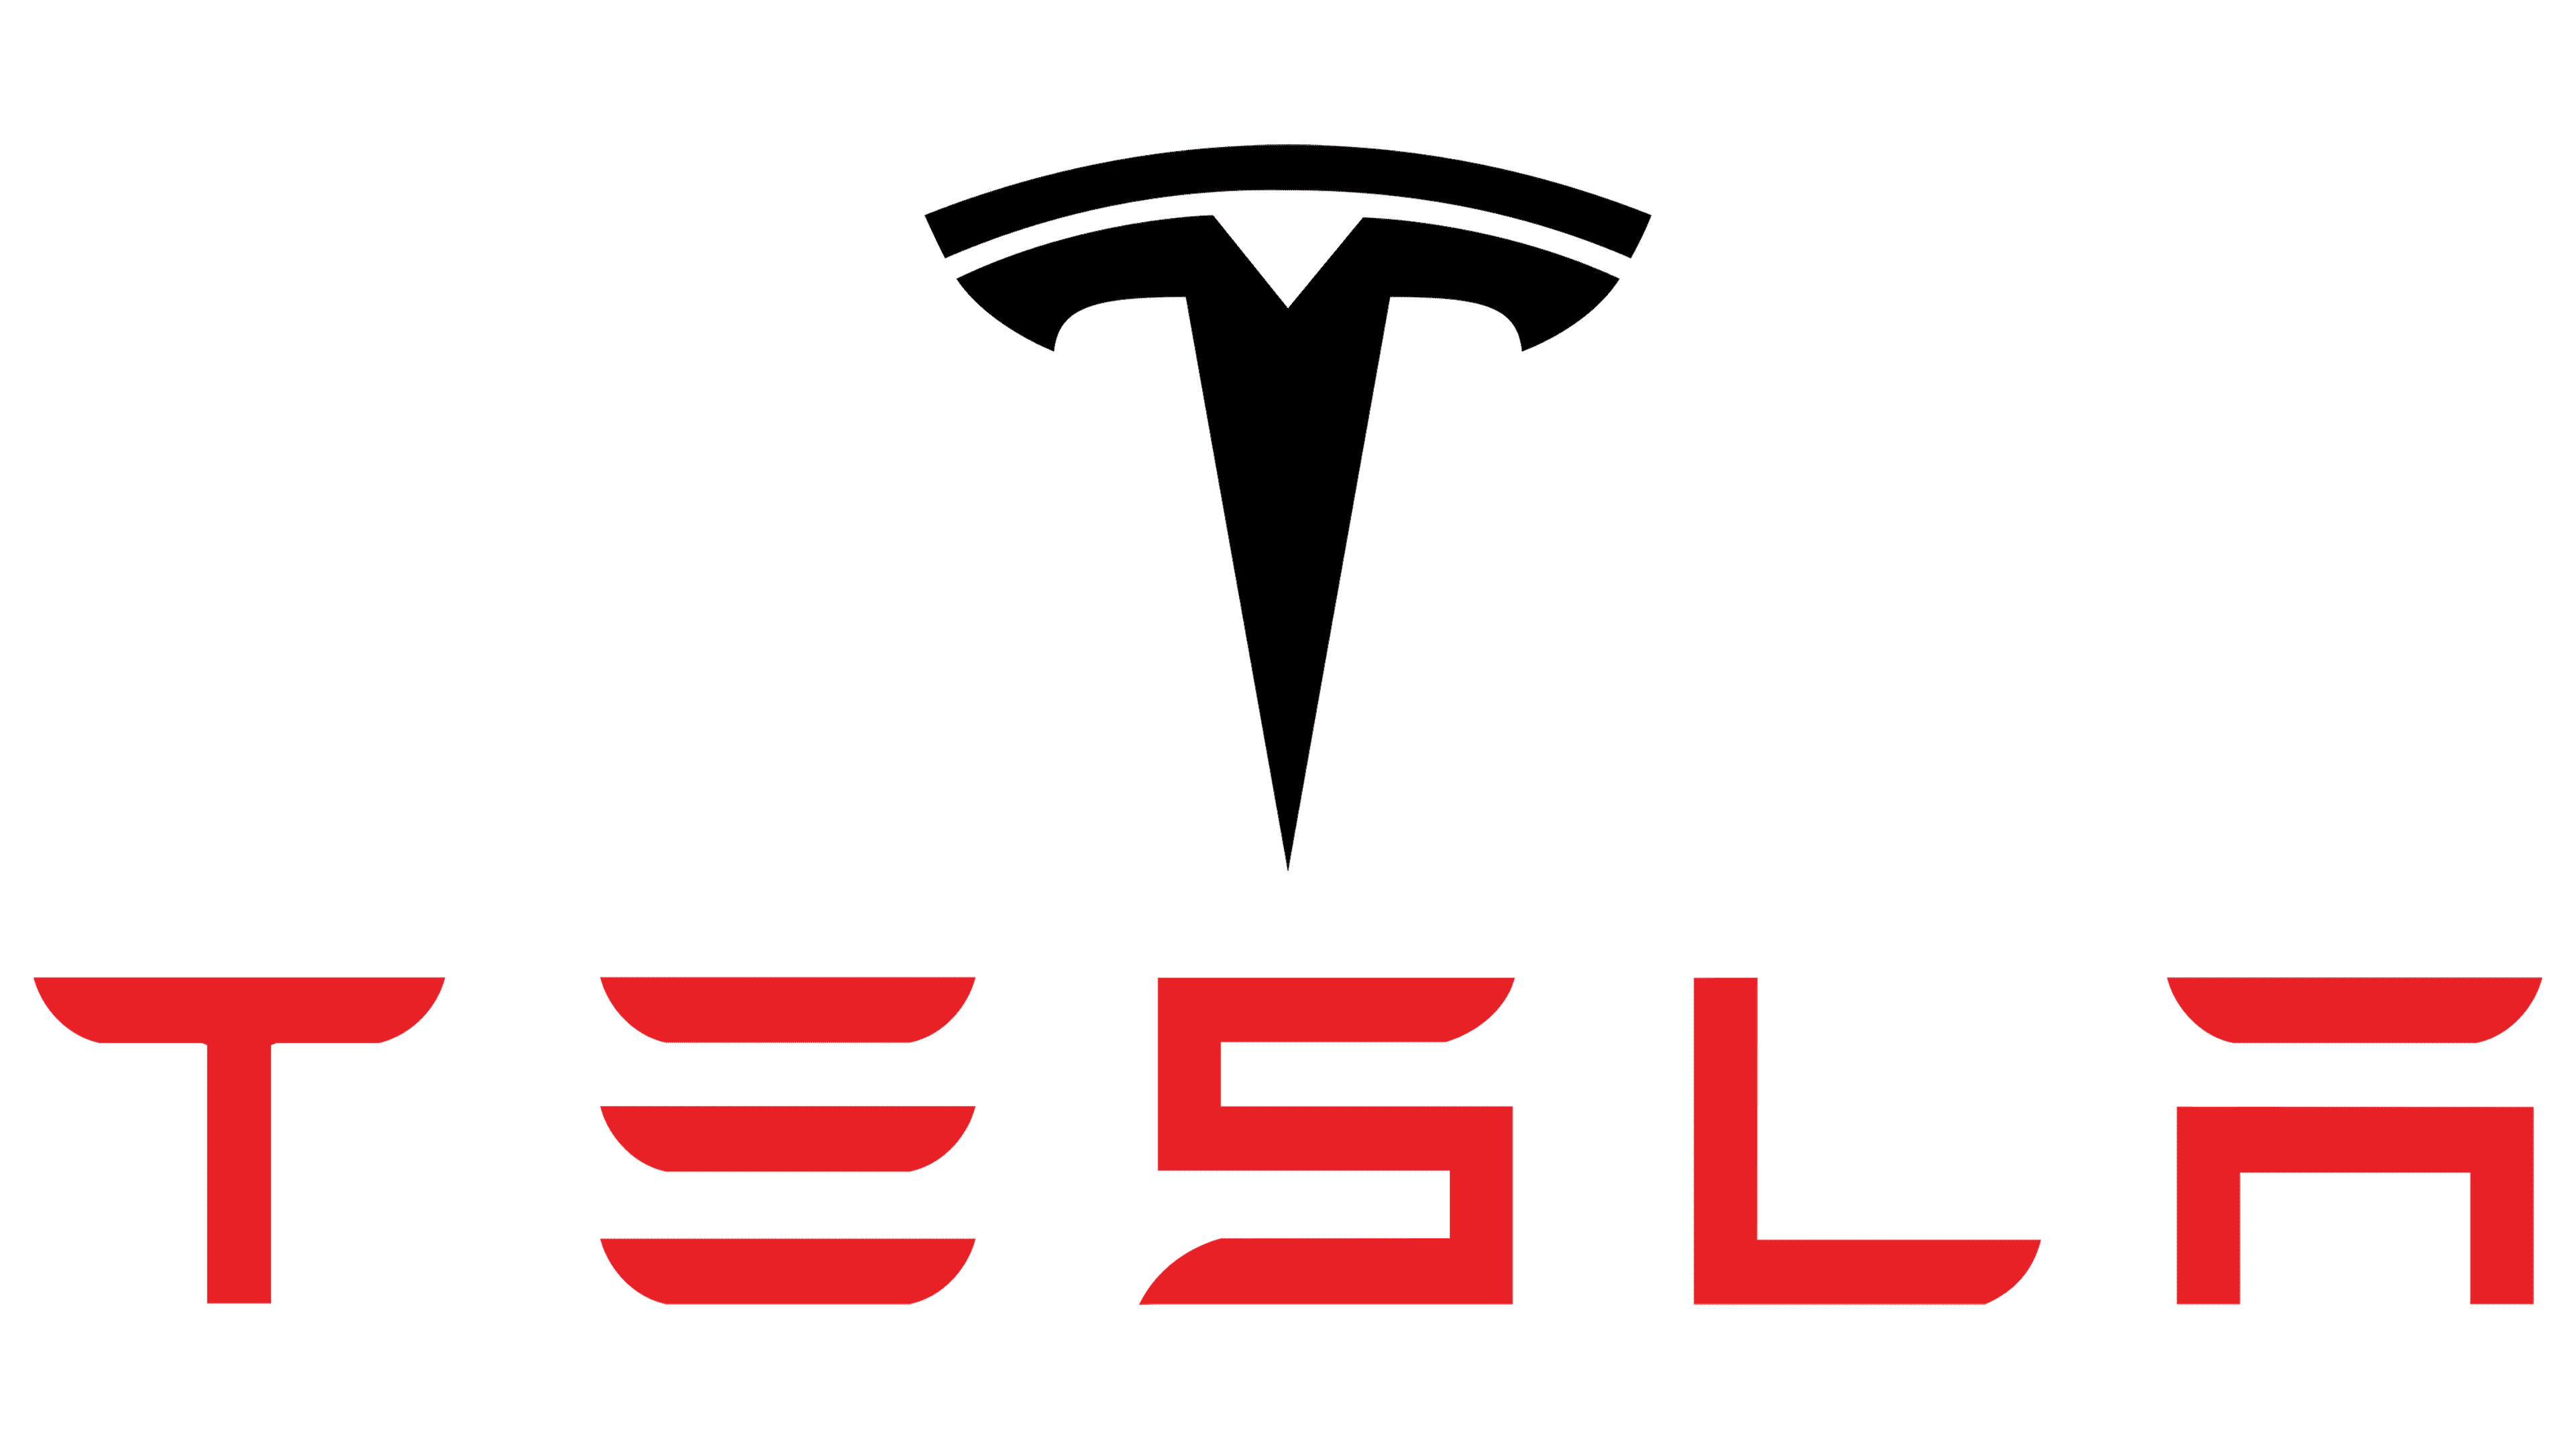 Tesla : Elon Musk va laisser les voitures des autres marques